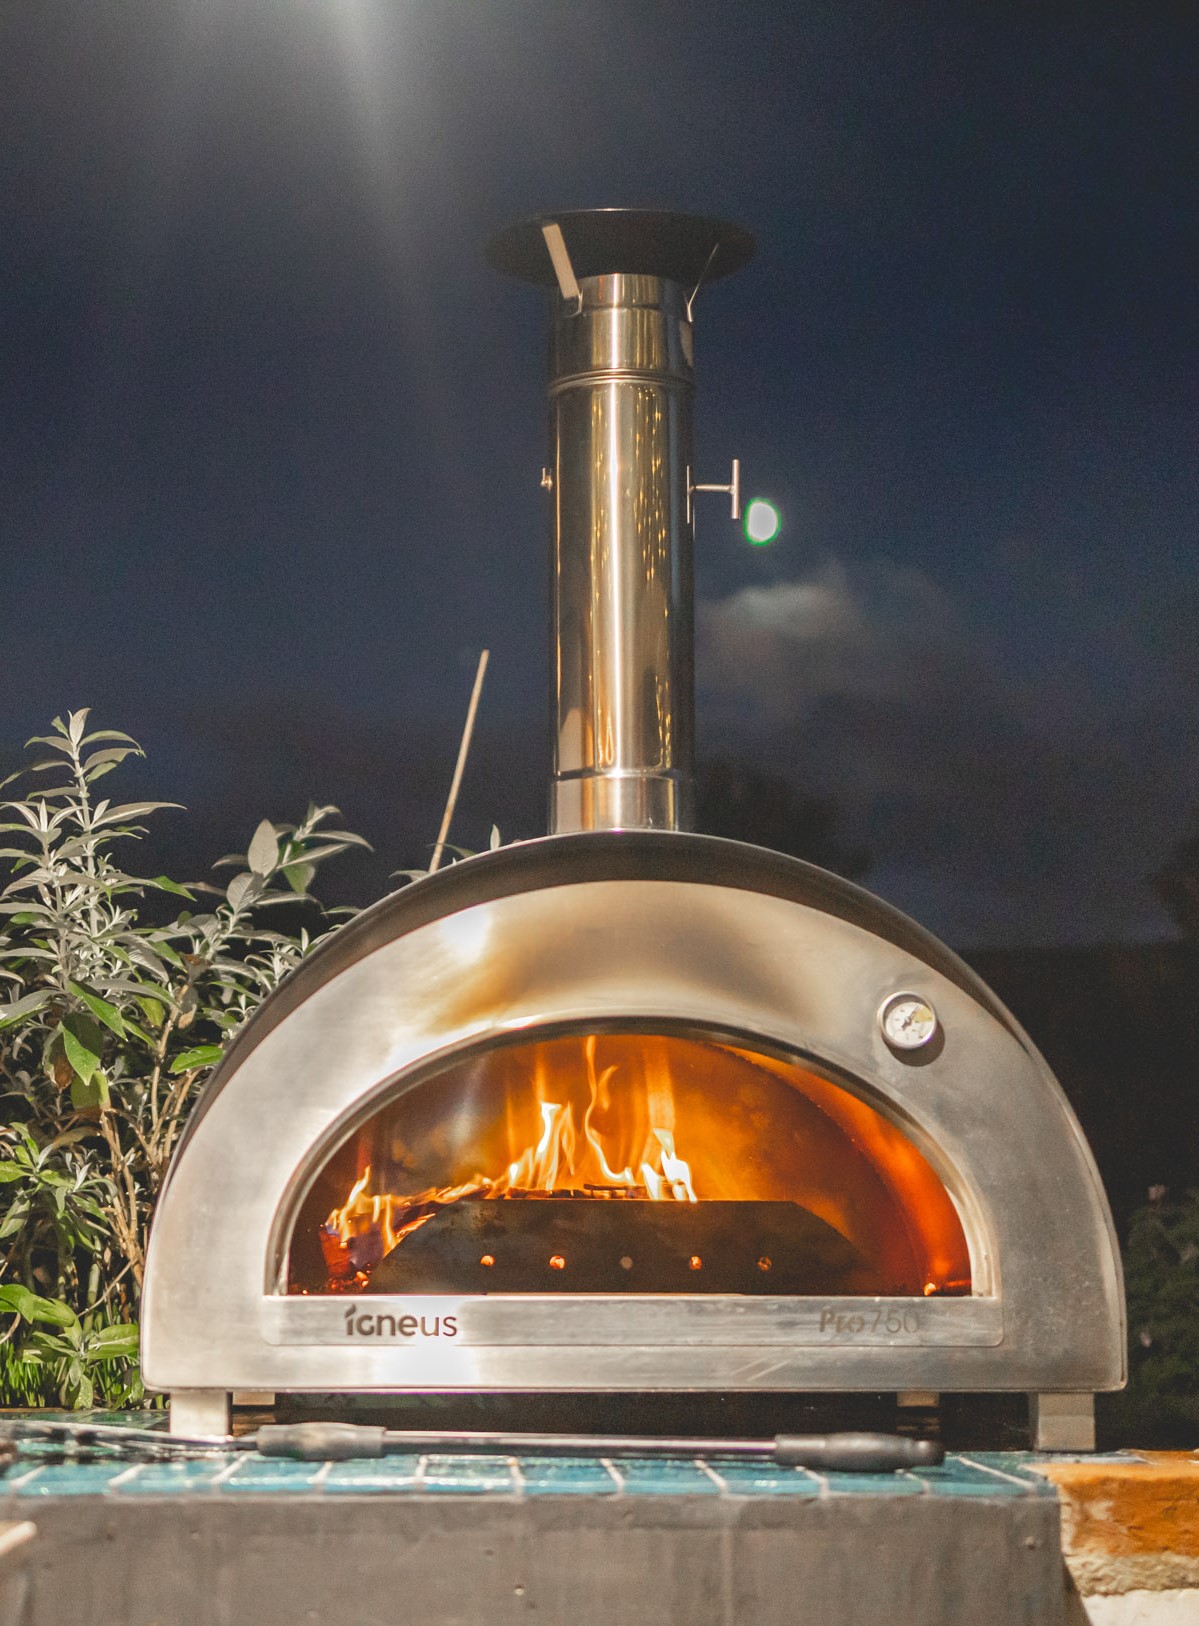 Igneus Pro 750 pizza oven